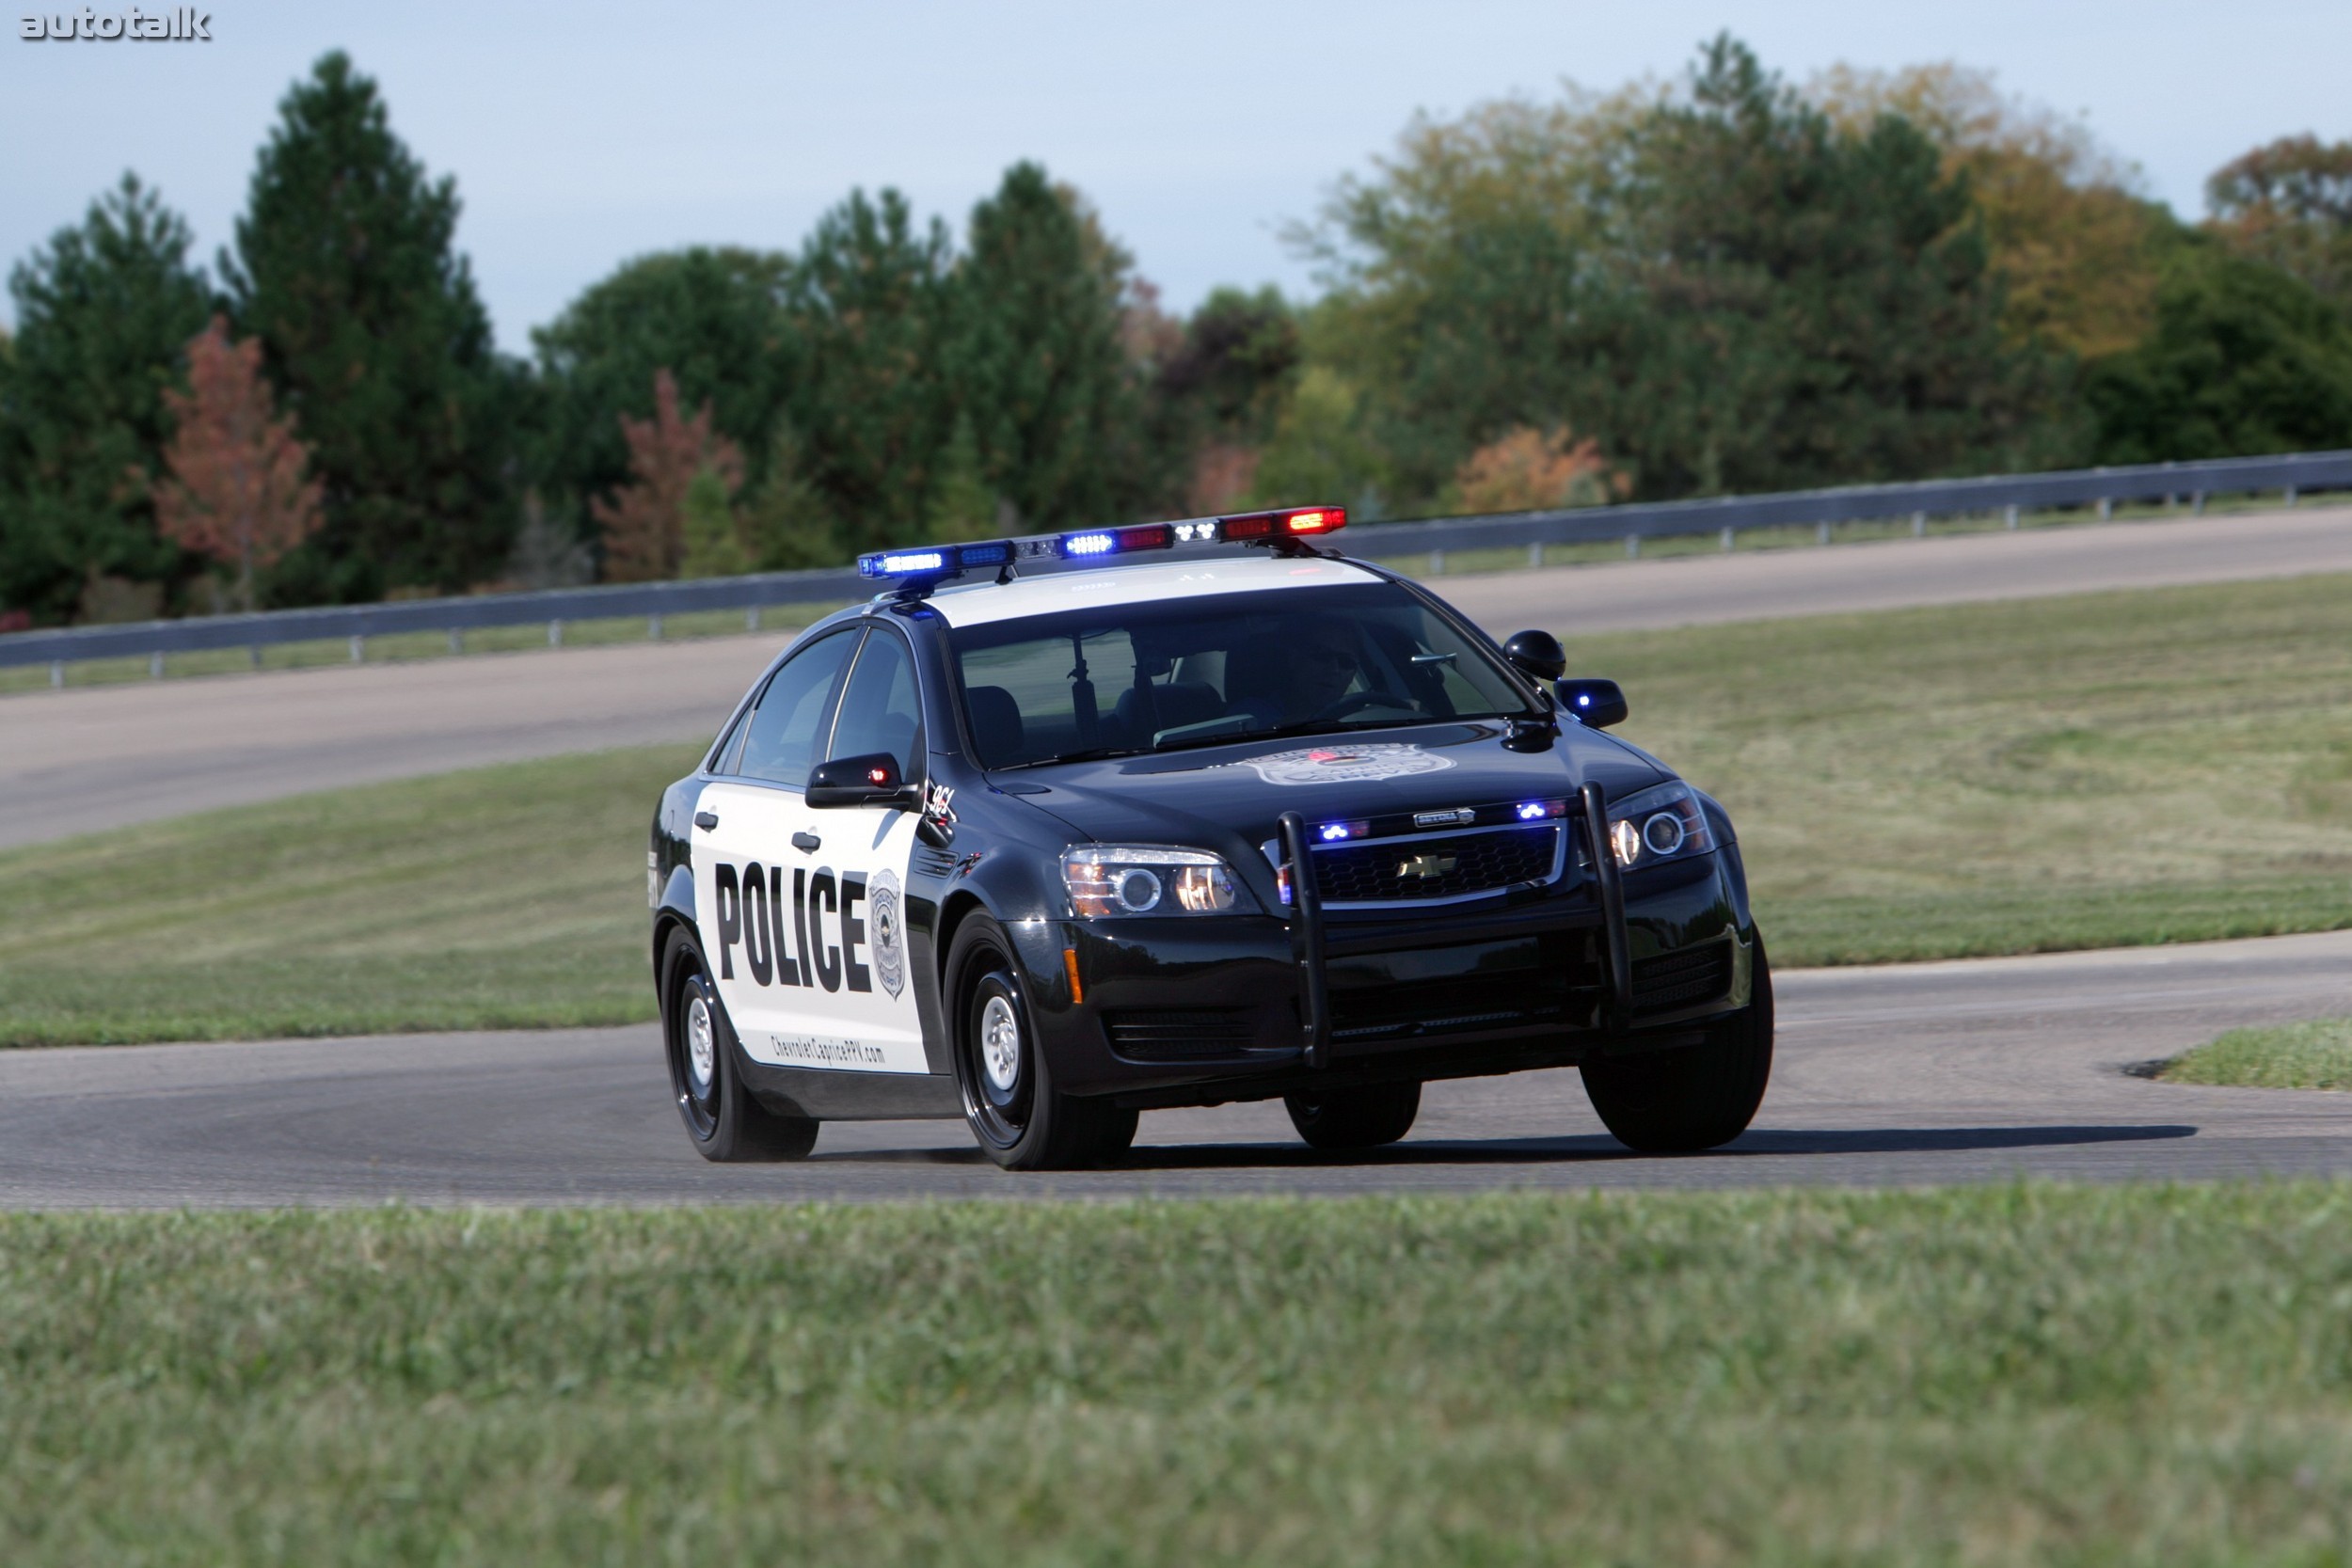 Хочу полицейскую машину. Chevrolet Caprice Police 2010. Chevrolet Caprice 2011. Chevrolet Caprice 2006 Police. Chevrolet Caprice Police Patrol vehicle.